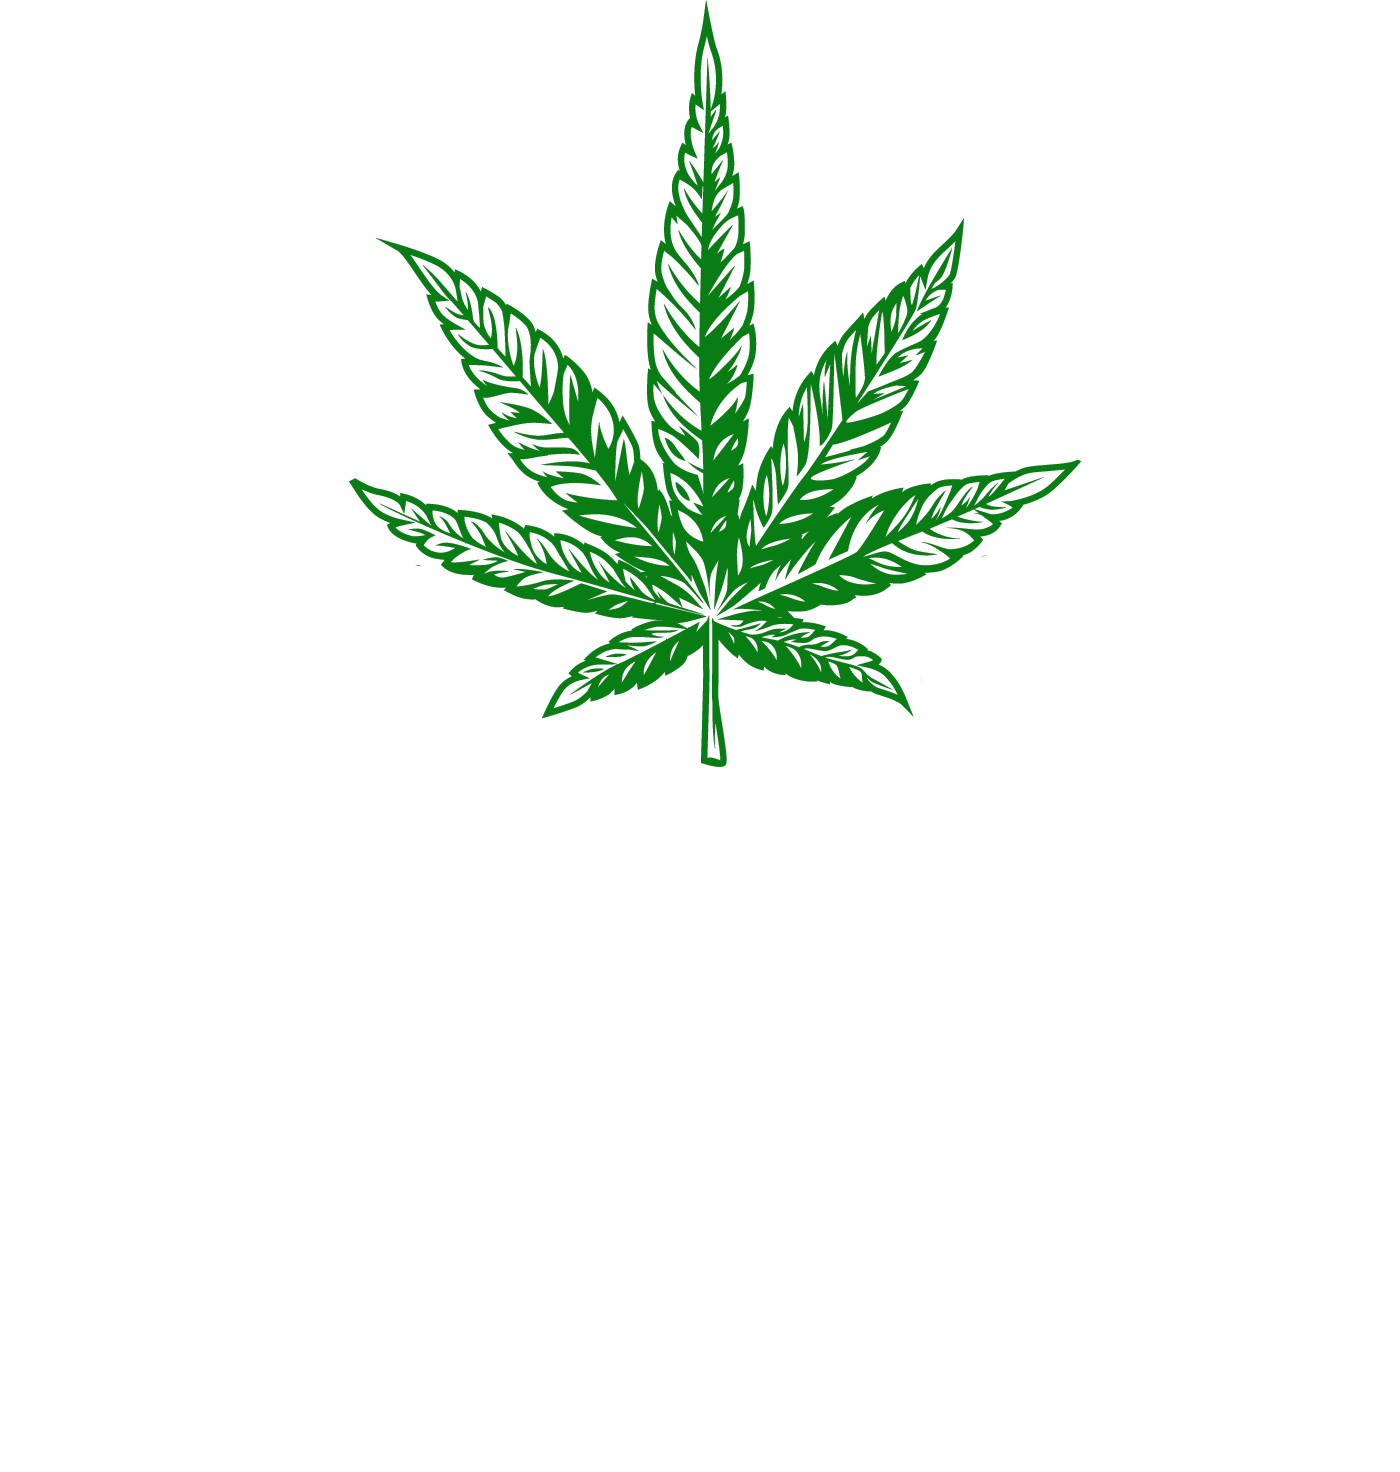 Dutchman's Garden Supplies